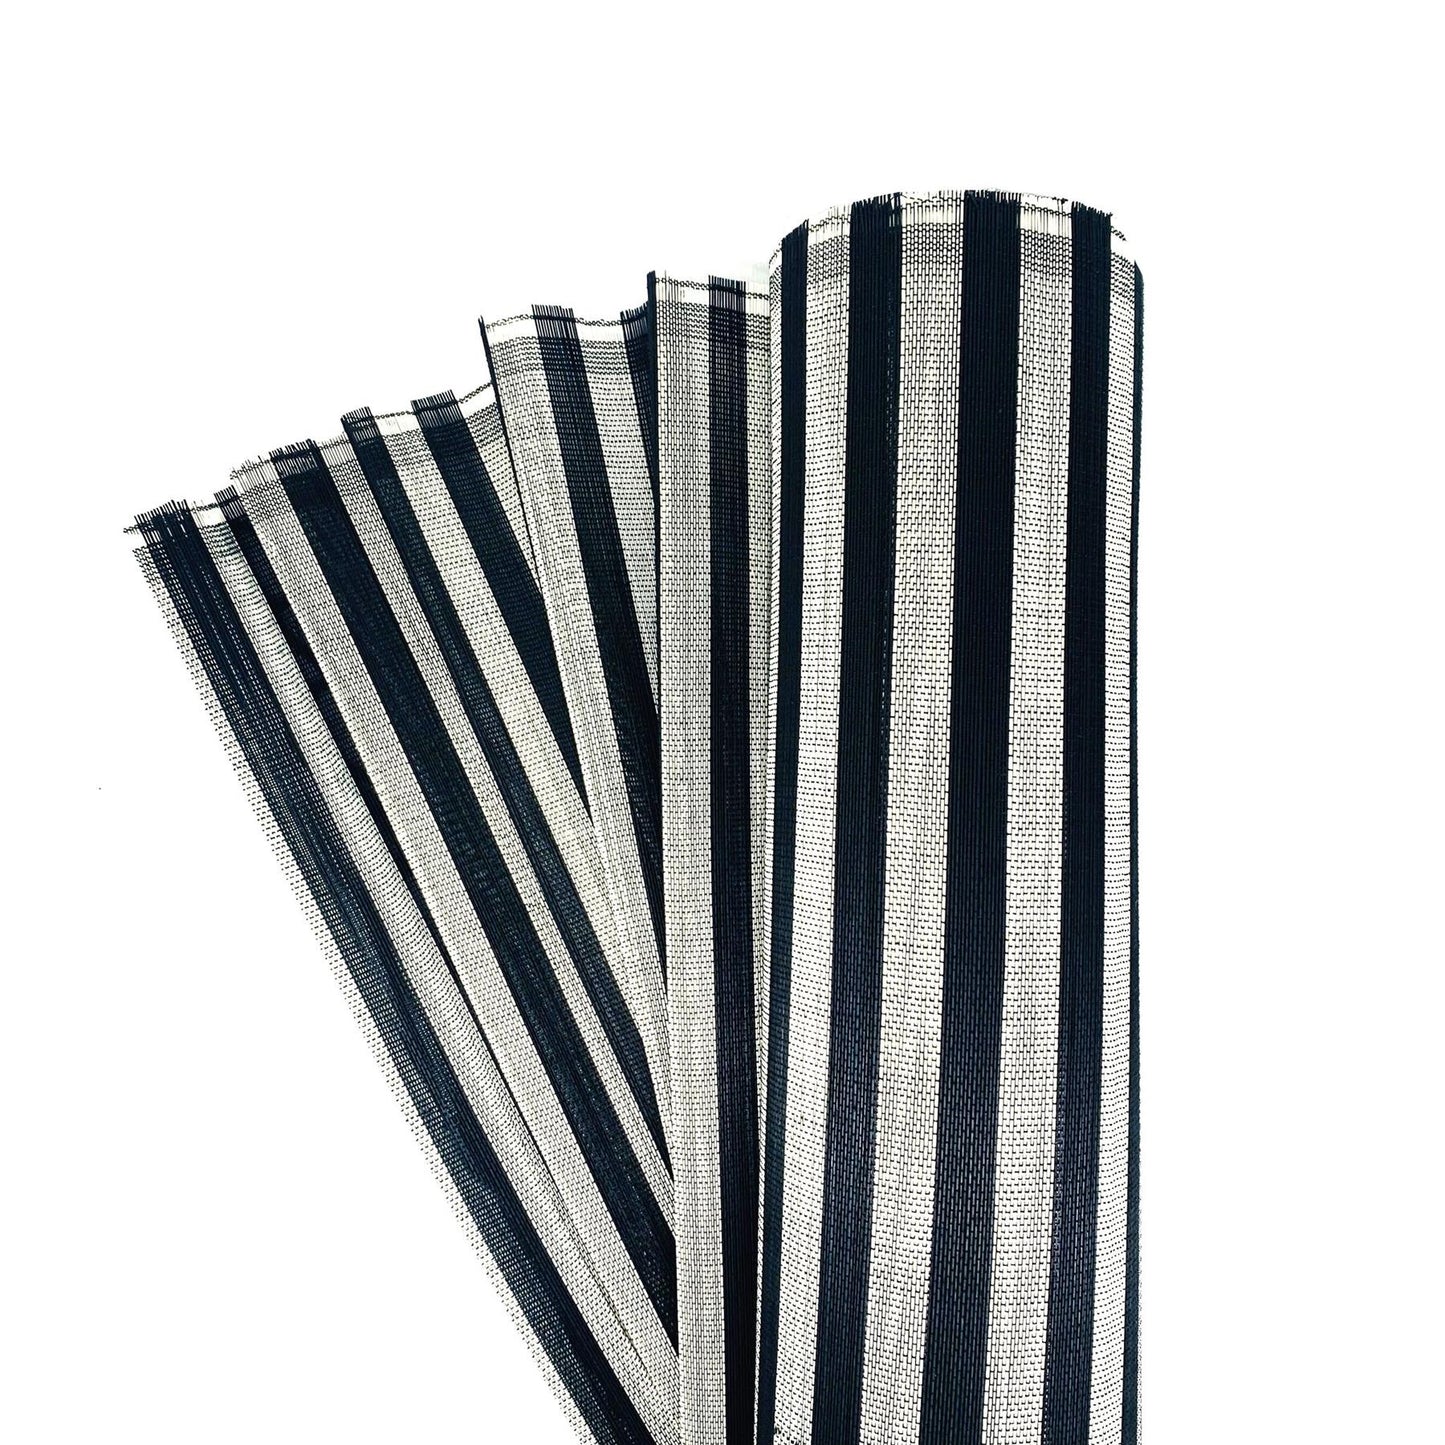 Jinsin/Buntal Fabric 90cm x 0.5m FS008